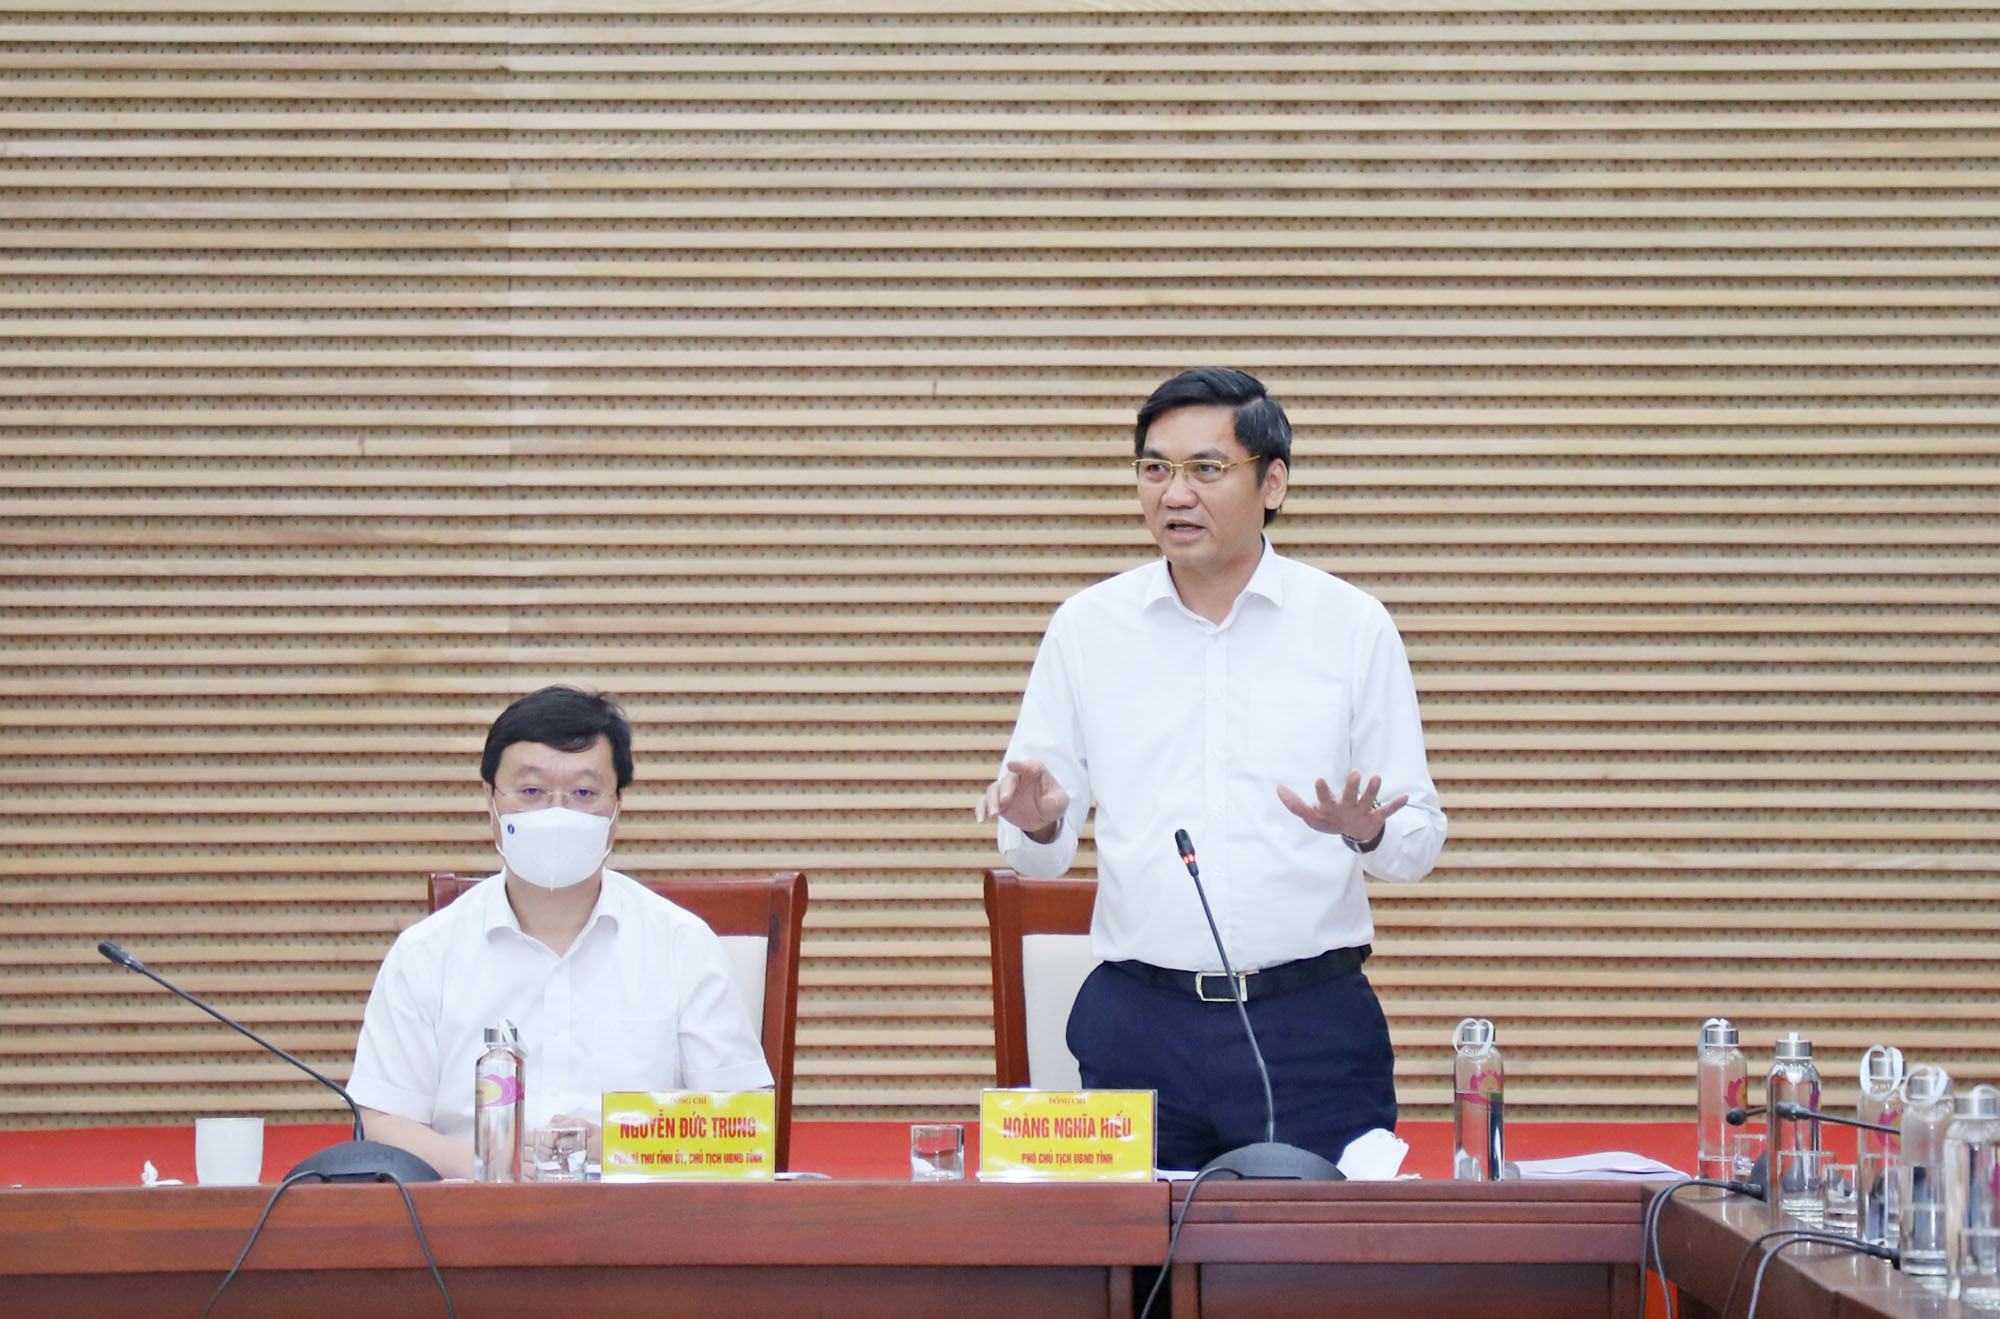 Đồng chí Hoàng Nghĩa Hiếu - Phó Chủ tịch UBND tỉnh phát biểu tại cuôc làm việc. Ảnh: Phạm Bằng